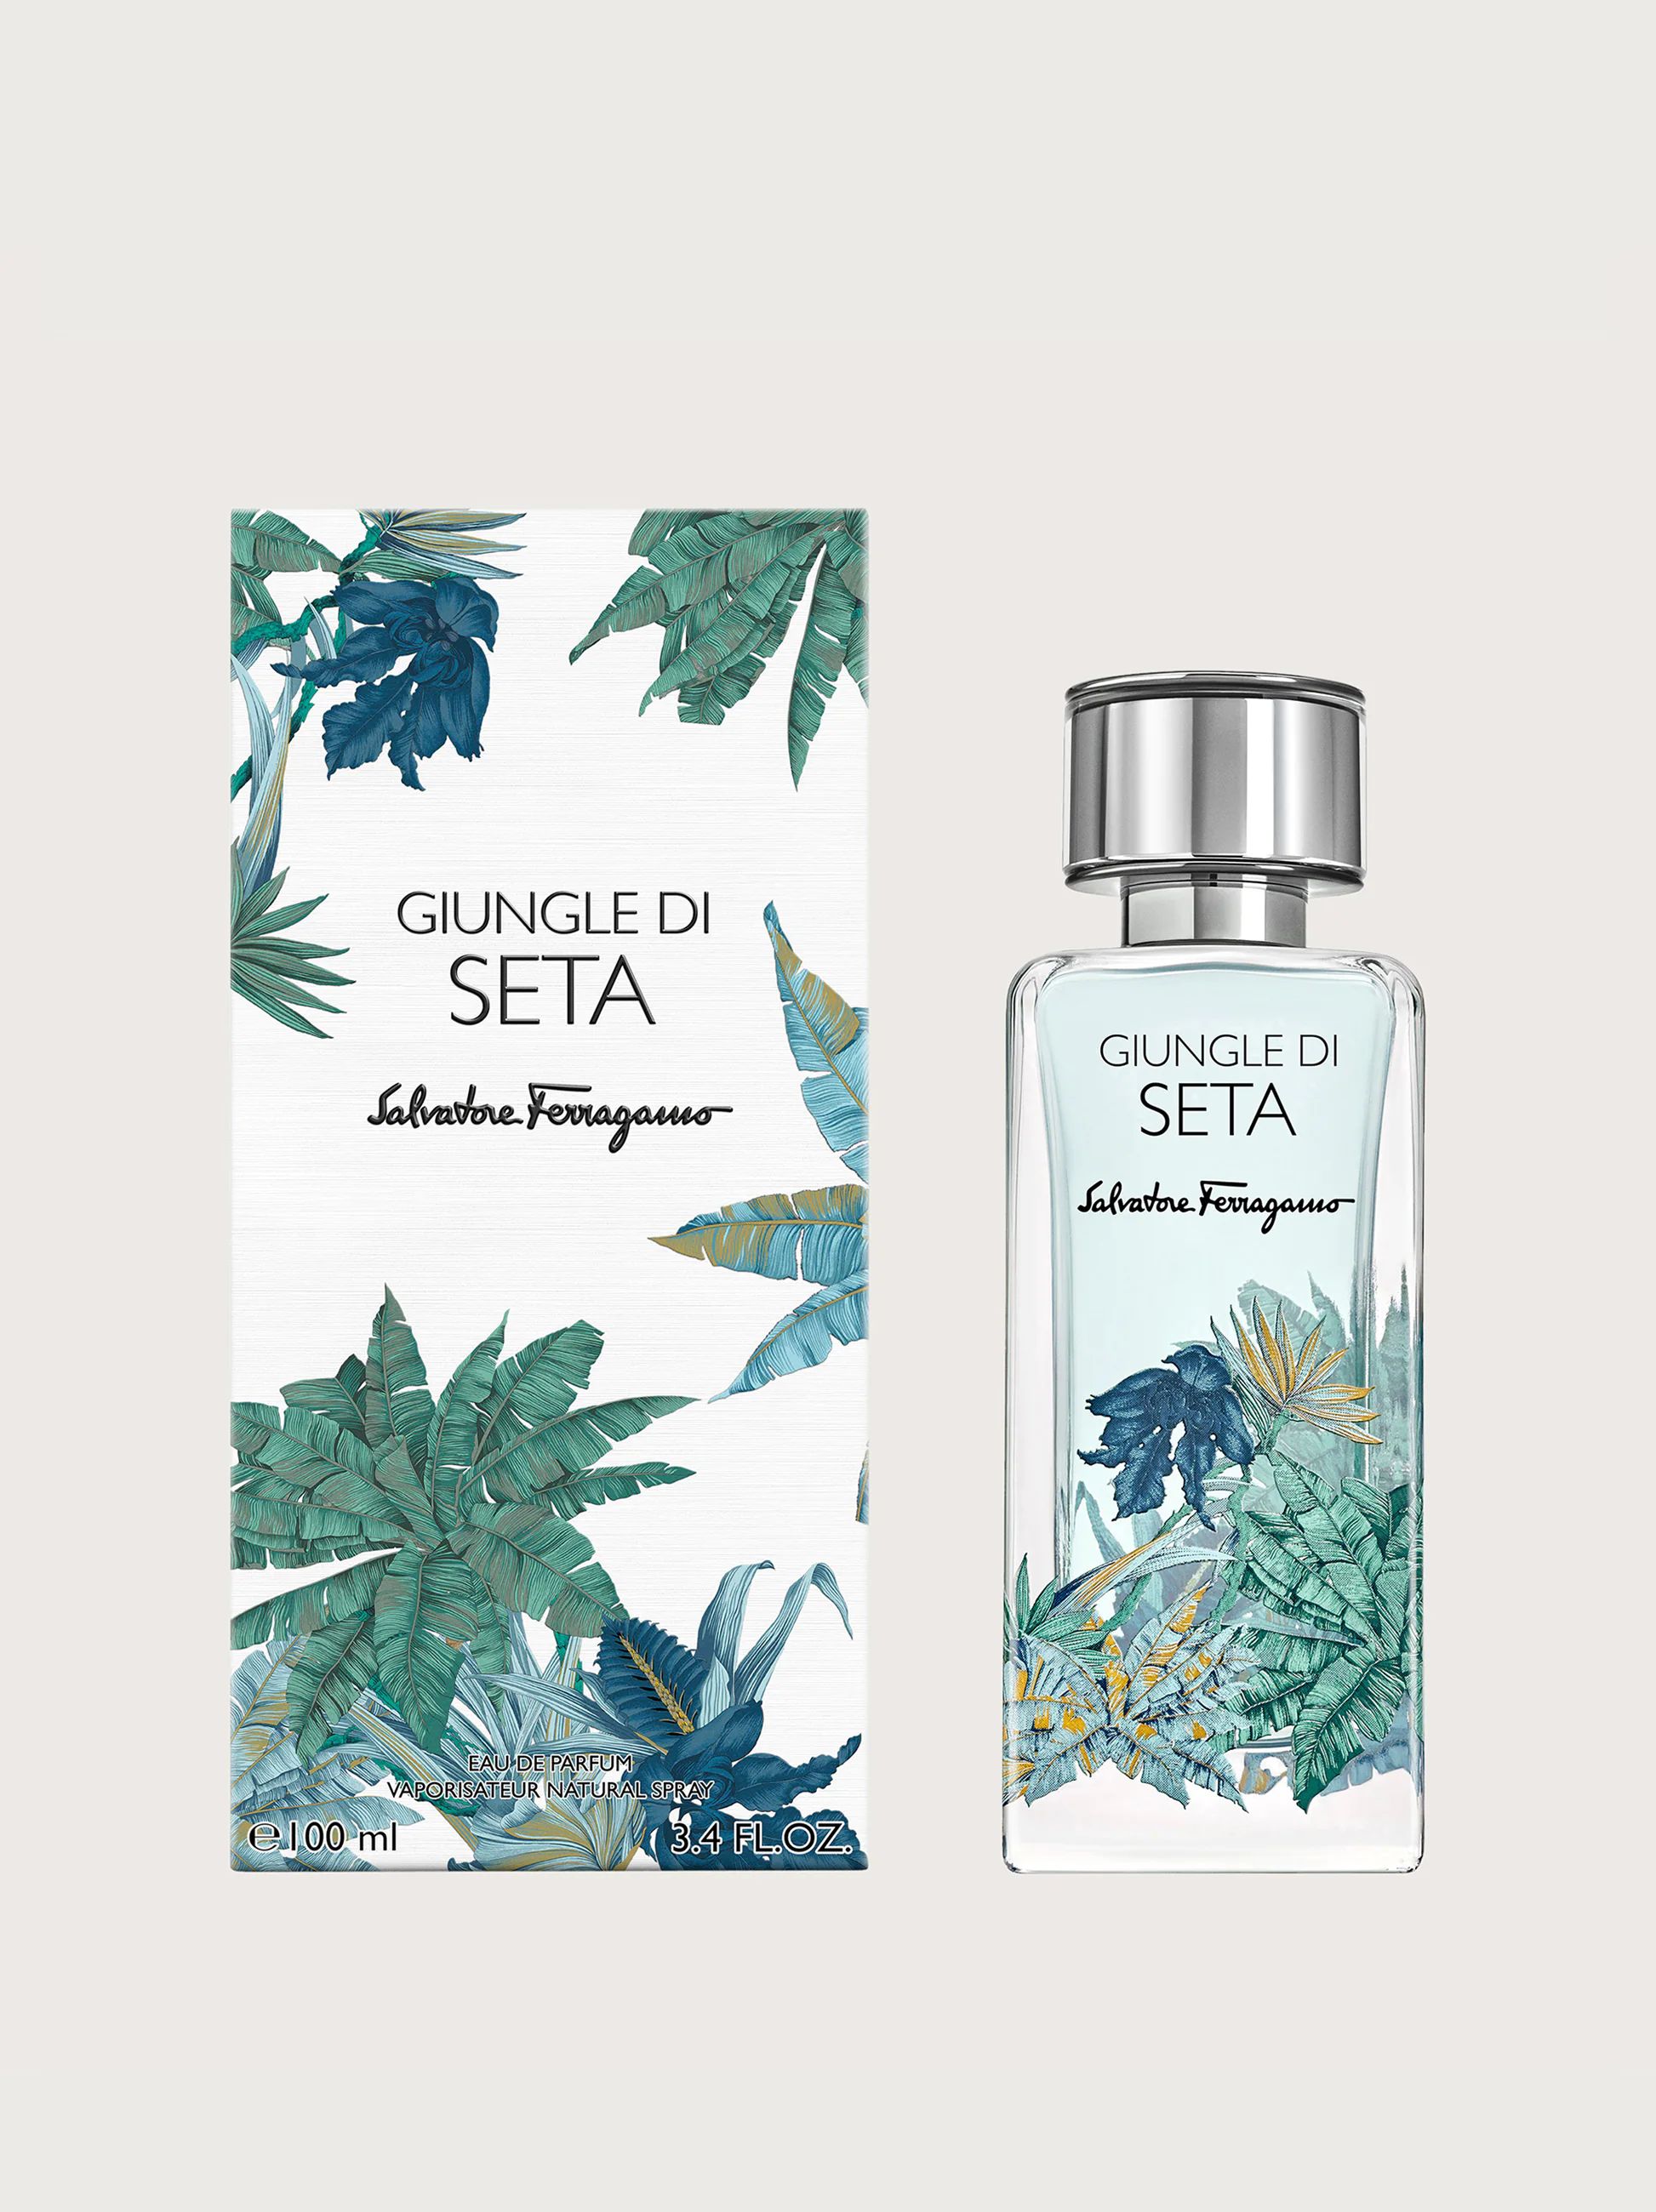 Giungle di Seta Salvatore Ferragamo perfume - a fragrance for women and ...